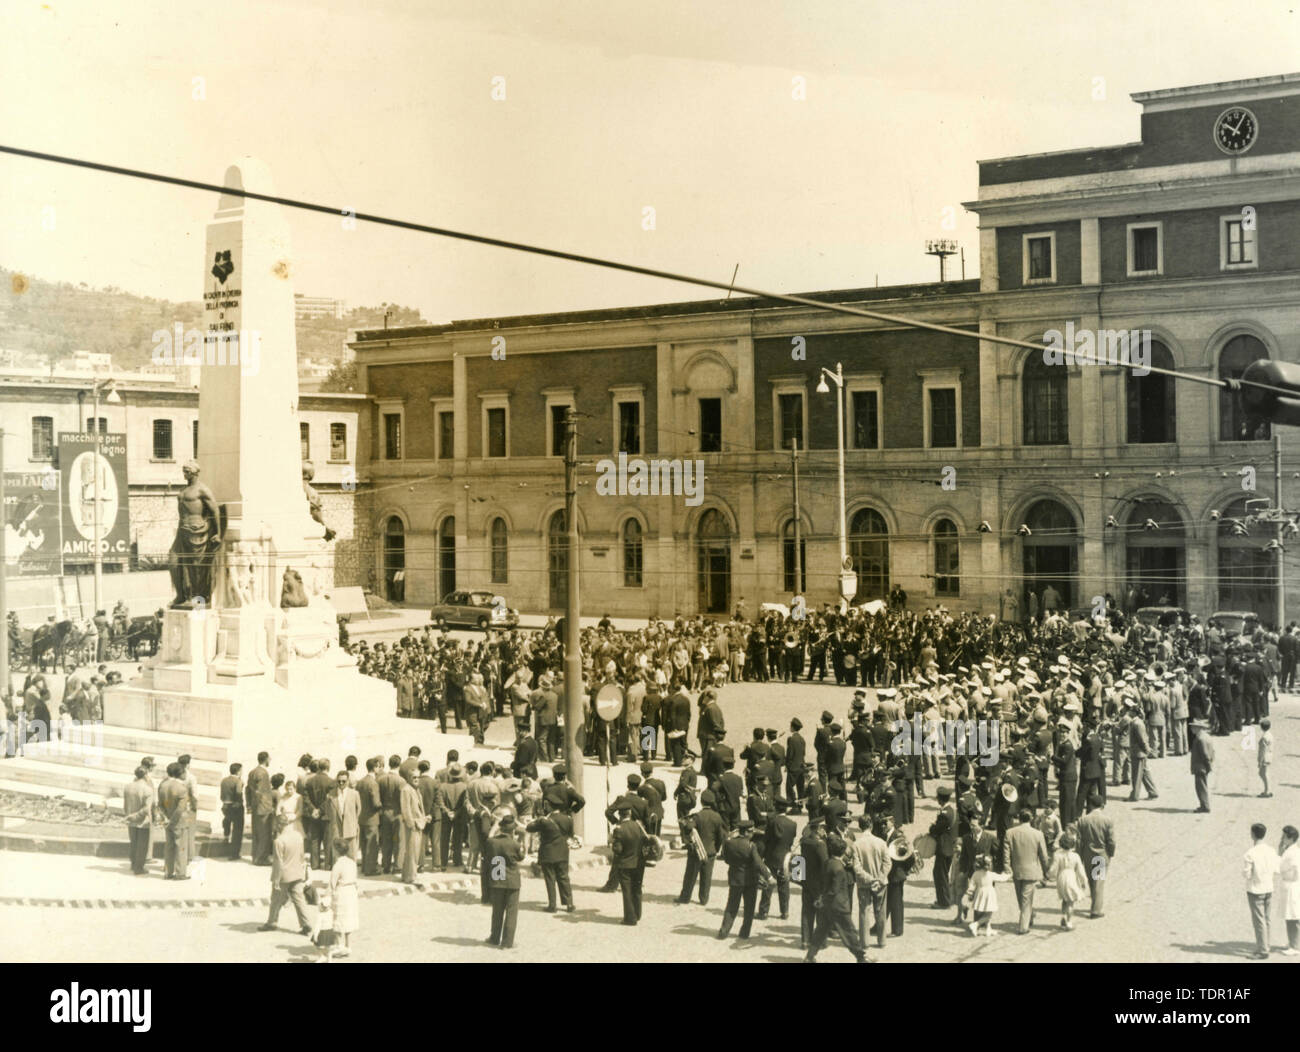 Bande militaire sur la Piazza Vittorio Veneto, Salerno, Italie 1950 Banque D'Images